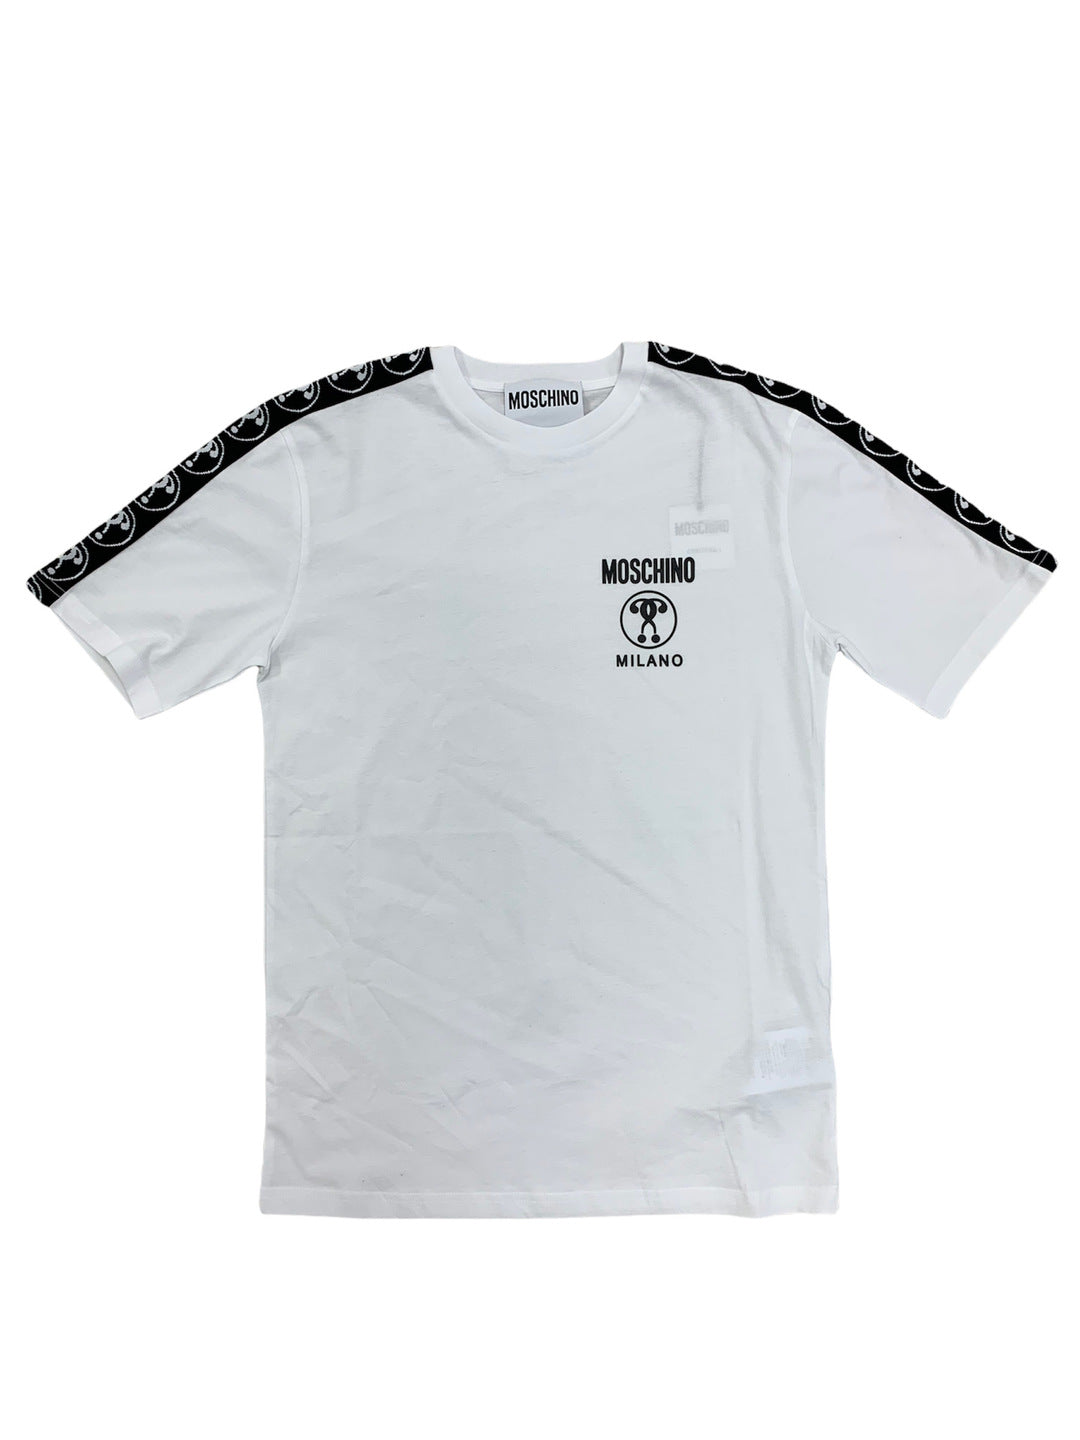 Moschino Tape Band White shirt